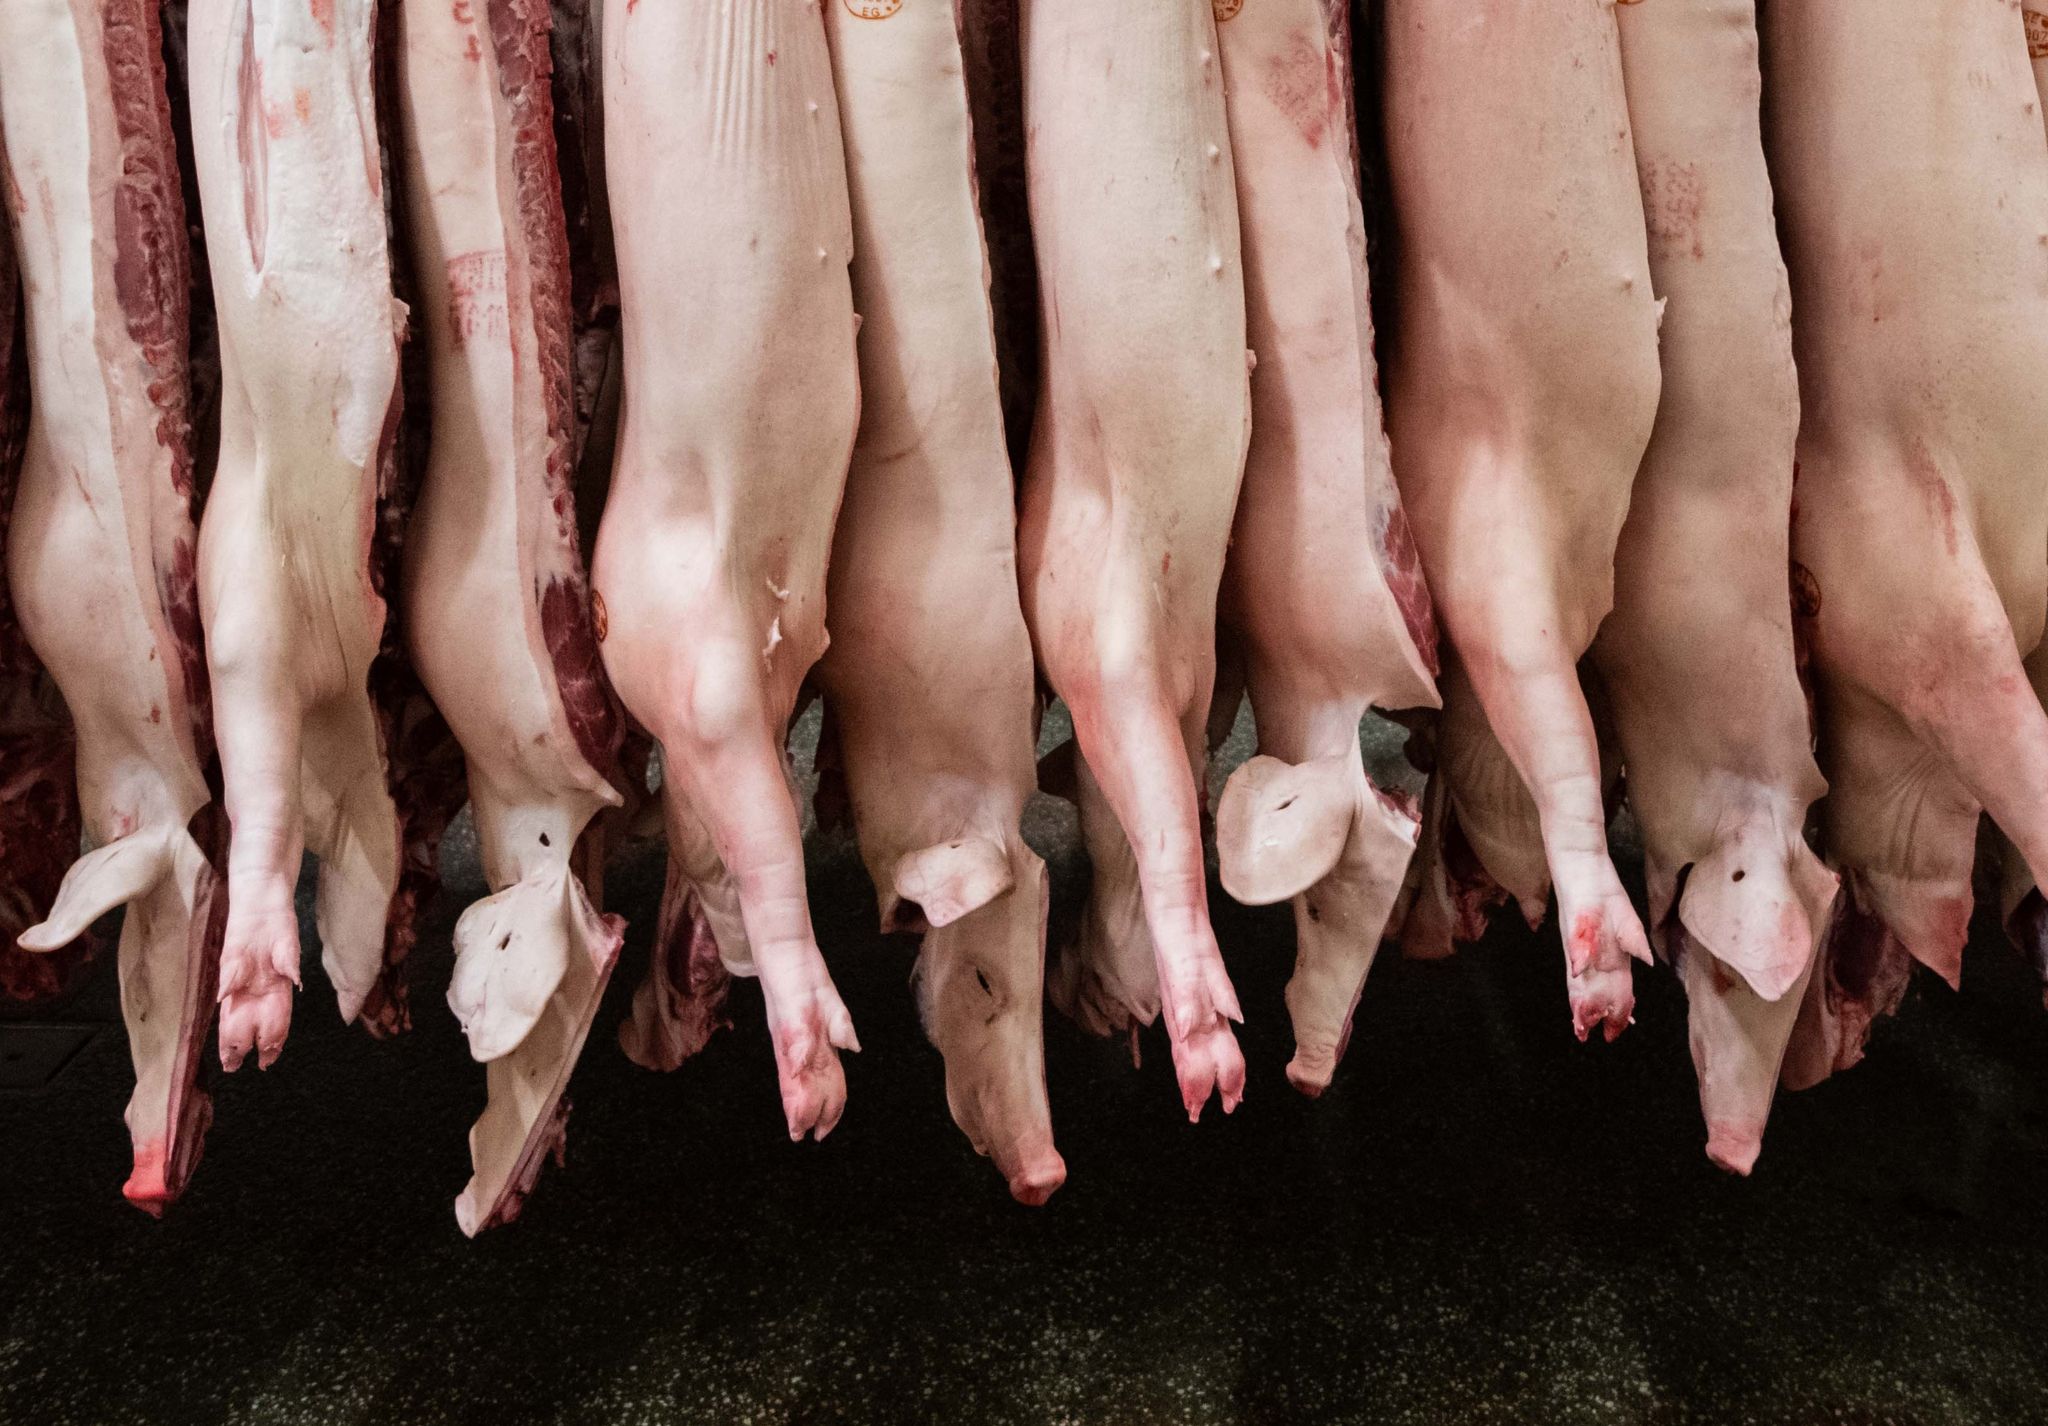 fleischproduktion sinkt weiter